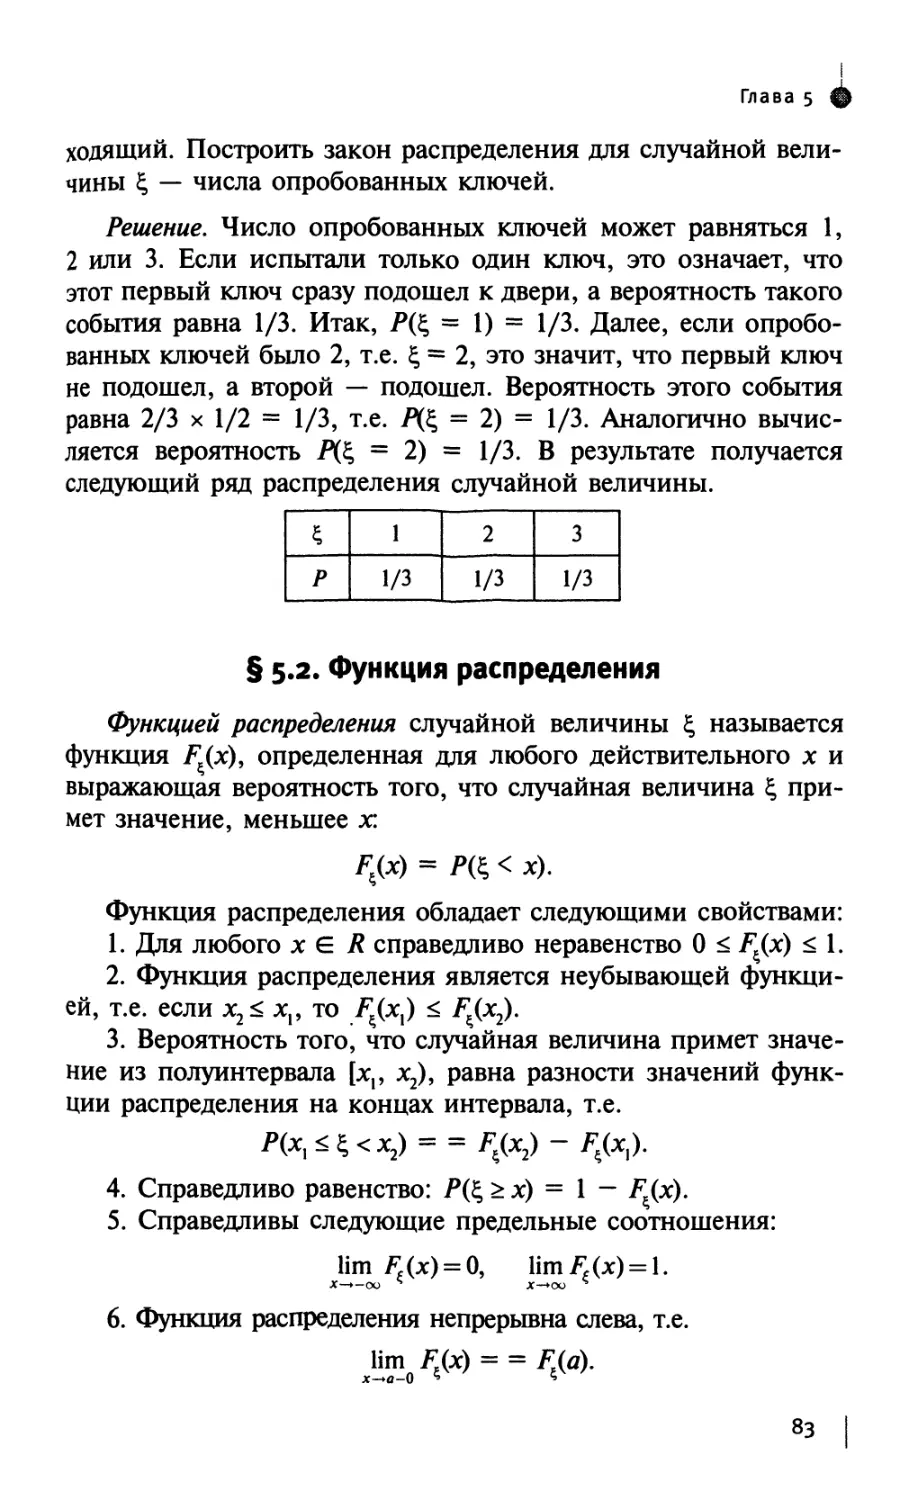 § 5.2. Функция распределения